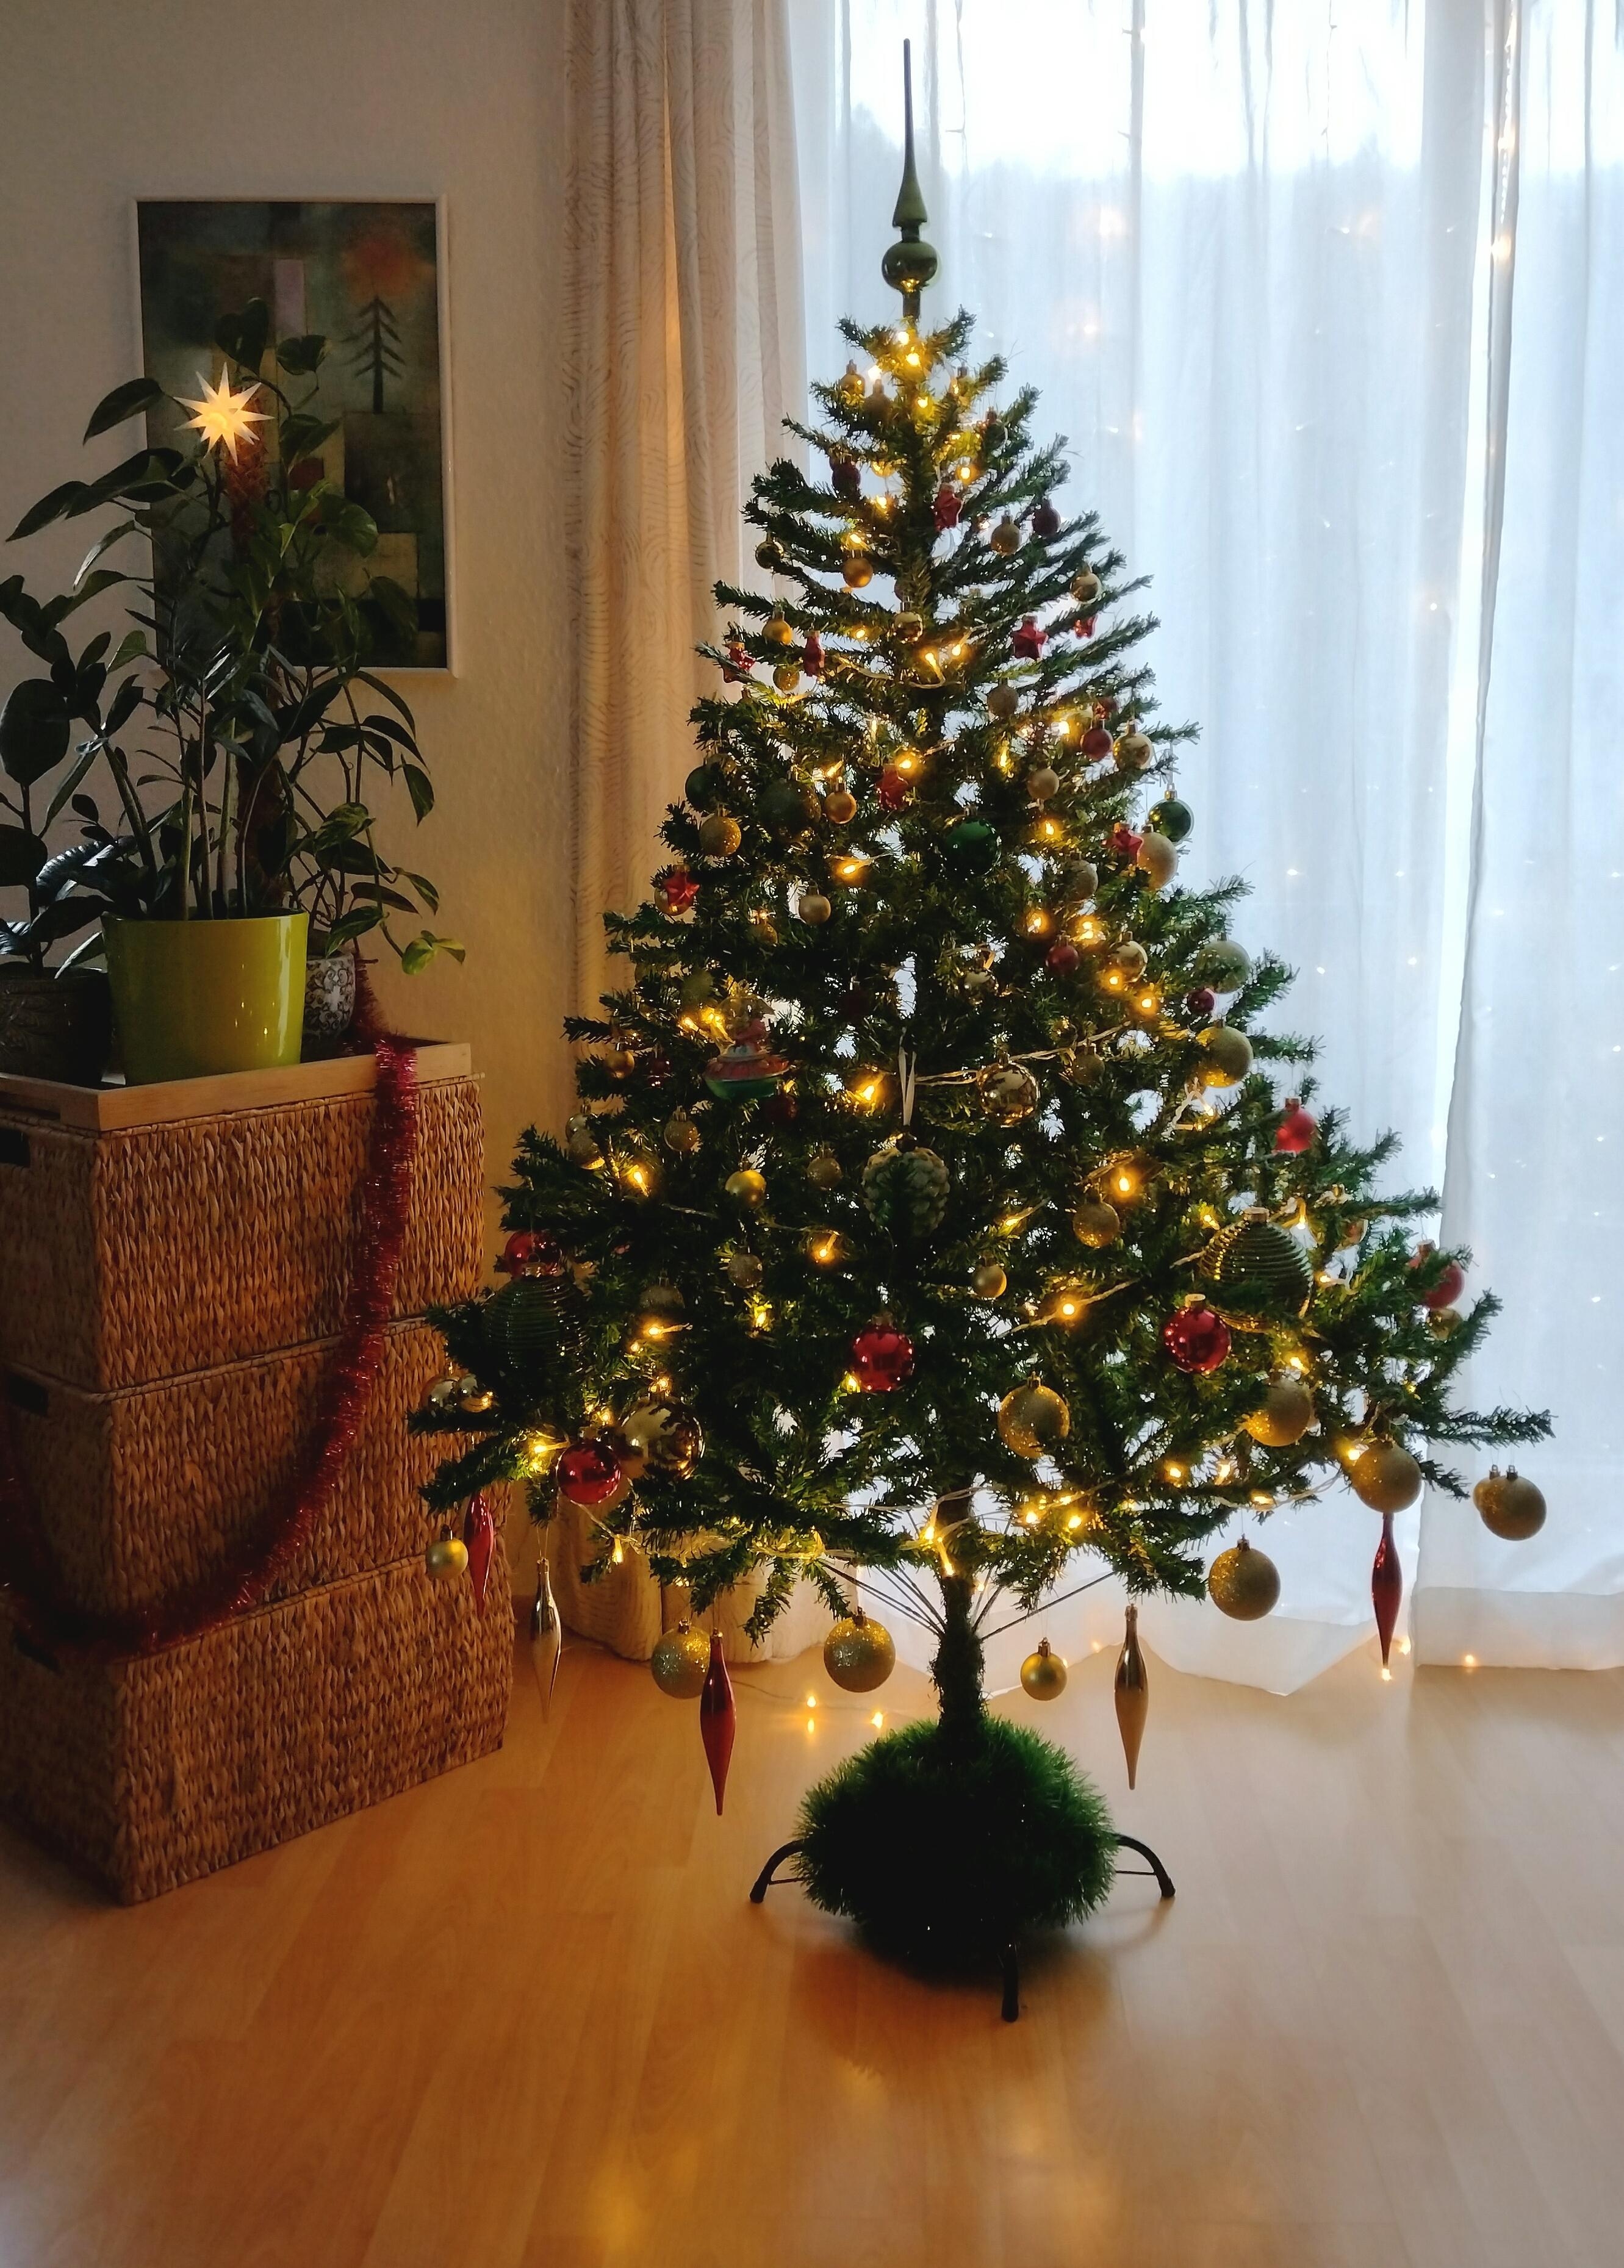 Frohe Weihnachten, ihr Lieben ✨🎄✨
#weihnachtsbaum #tannenbaum